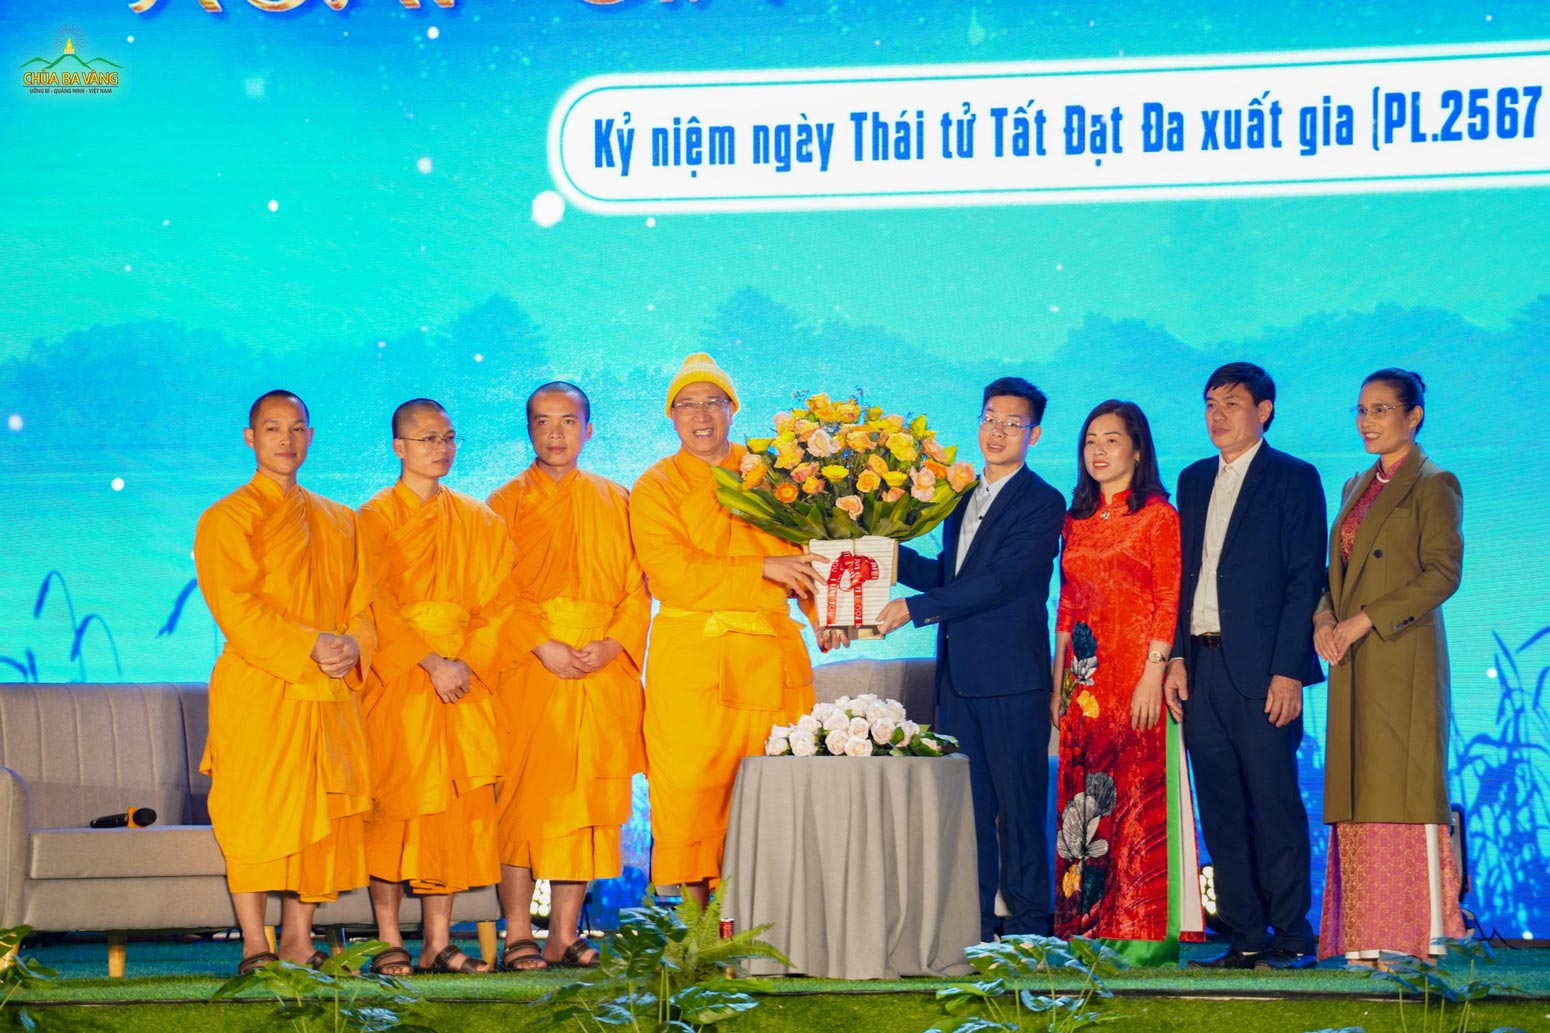 Phật tử Đỗ Đức Minh Hiếu cùng gia đình dâng lẵng hoa tri ân cúng dường Sư Phụ trong đêm văn nghệ kỷ niệm ngày Thái tử Tất Đạt Đa xuất gia